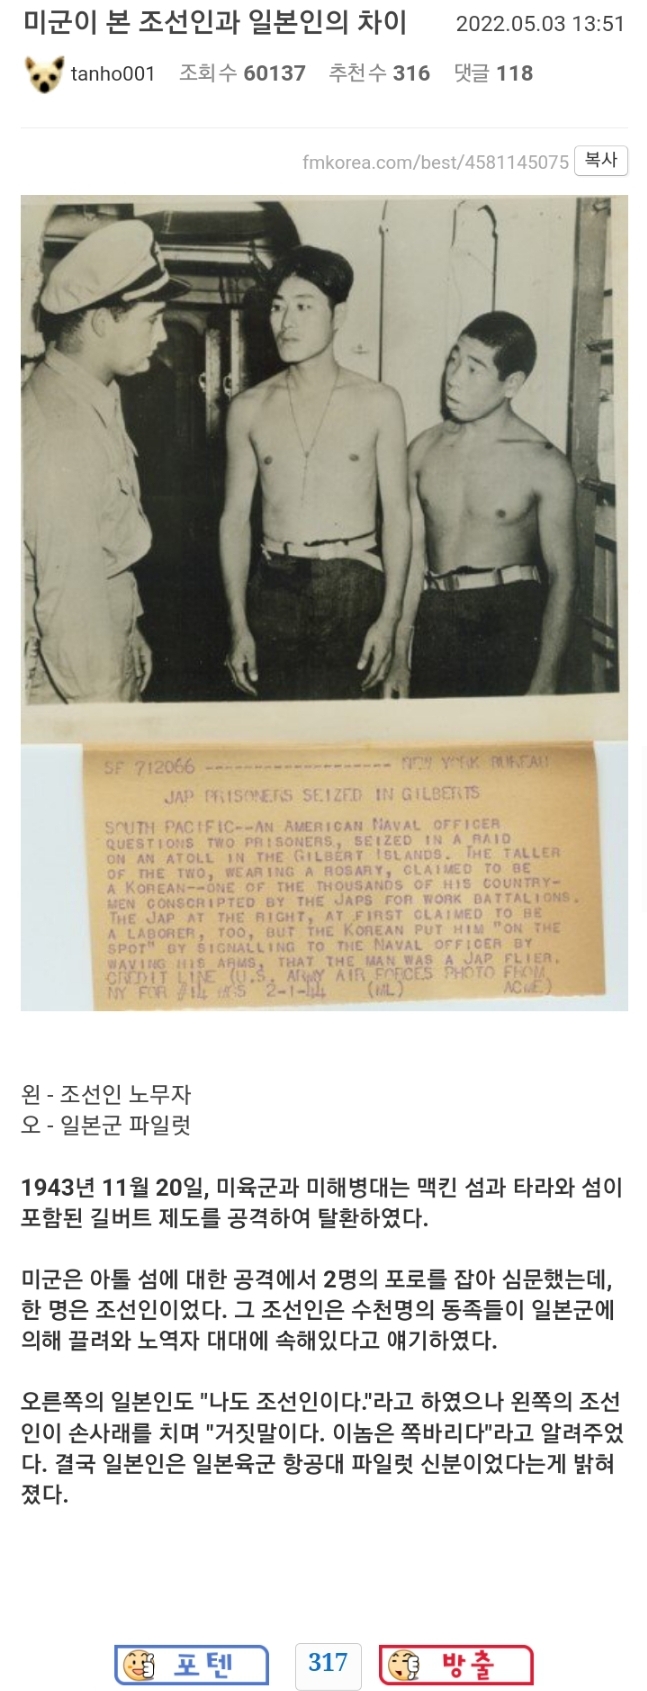 米軍に捕虜となった朝鮮人と日本人